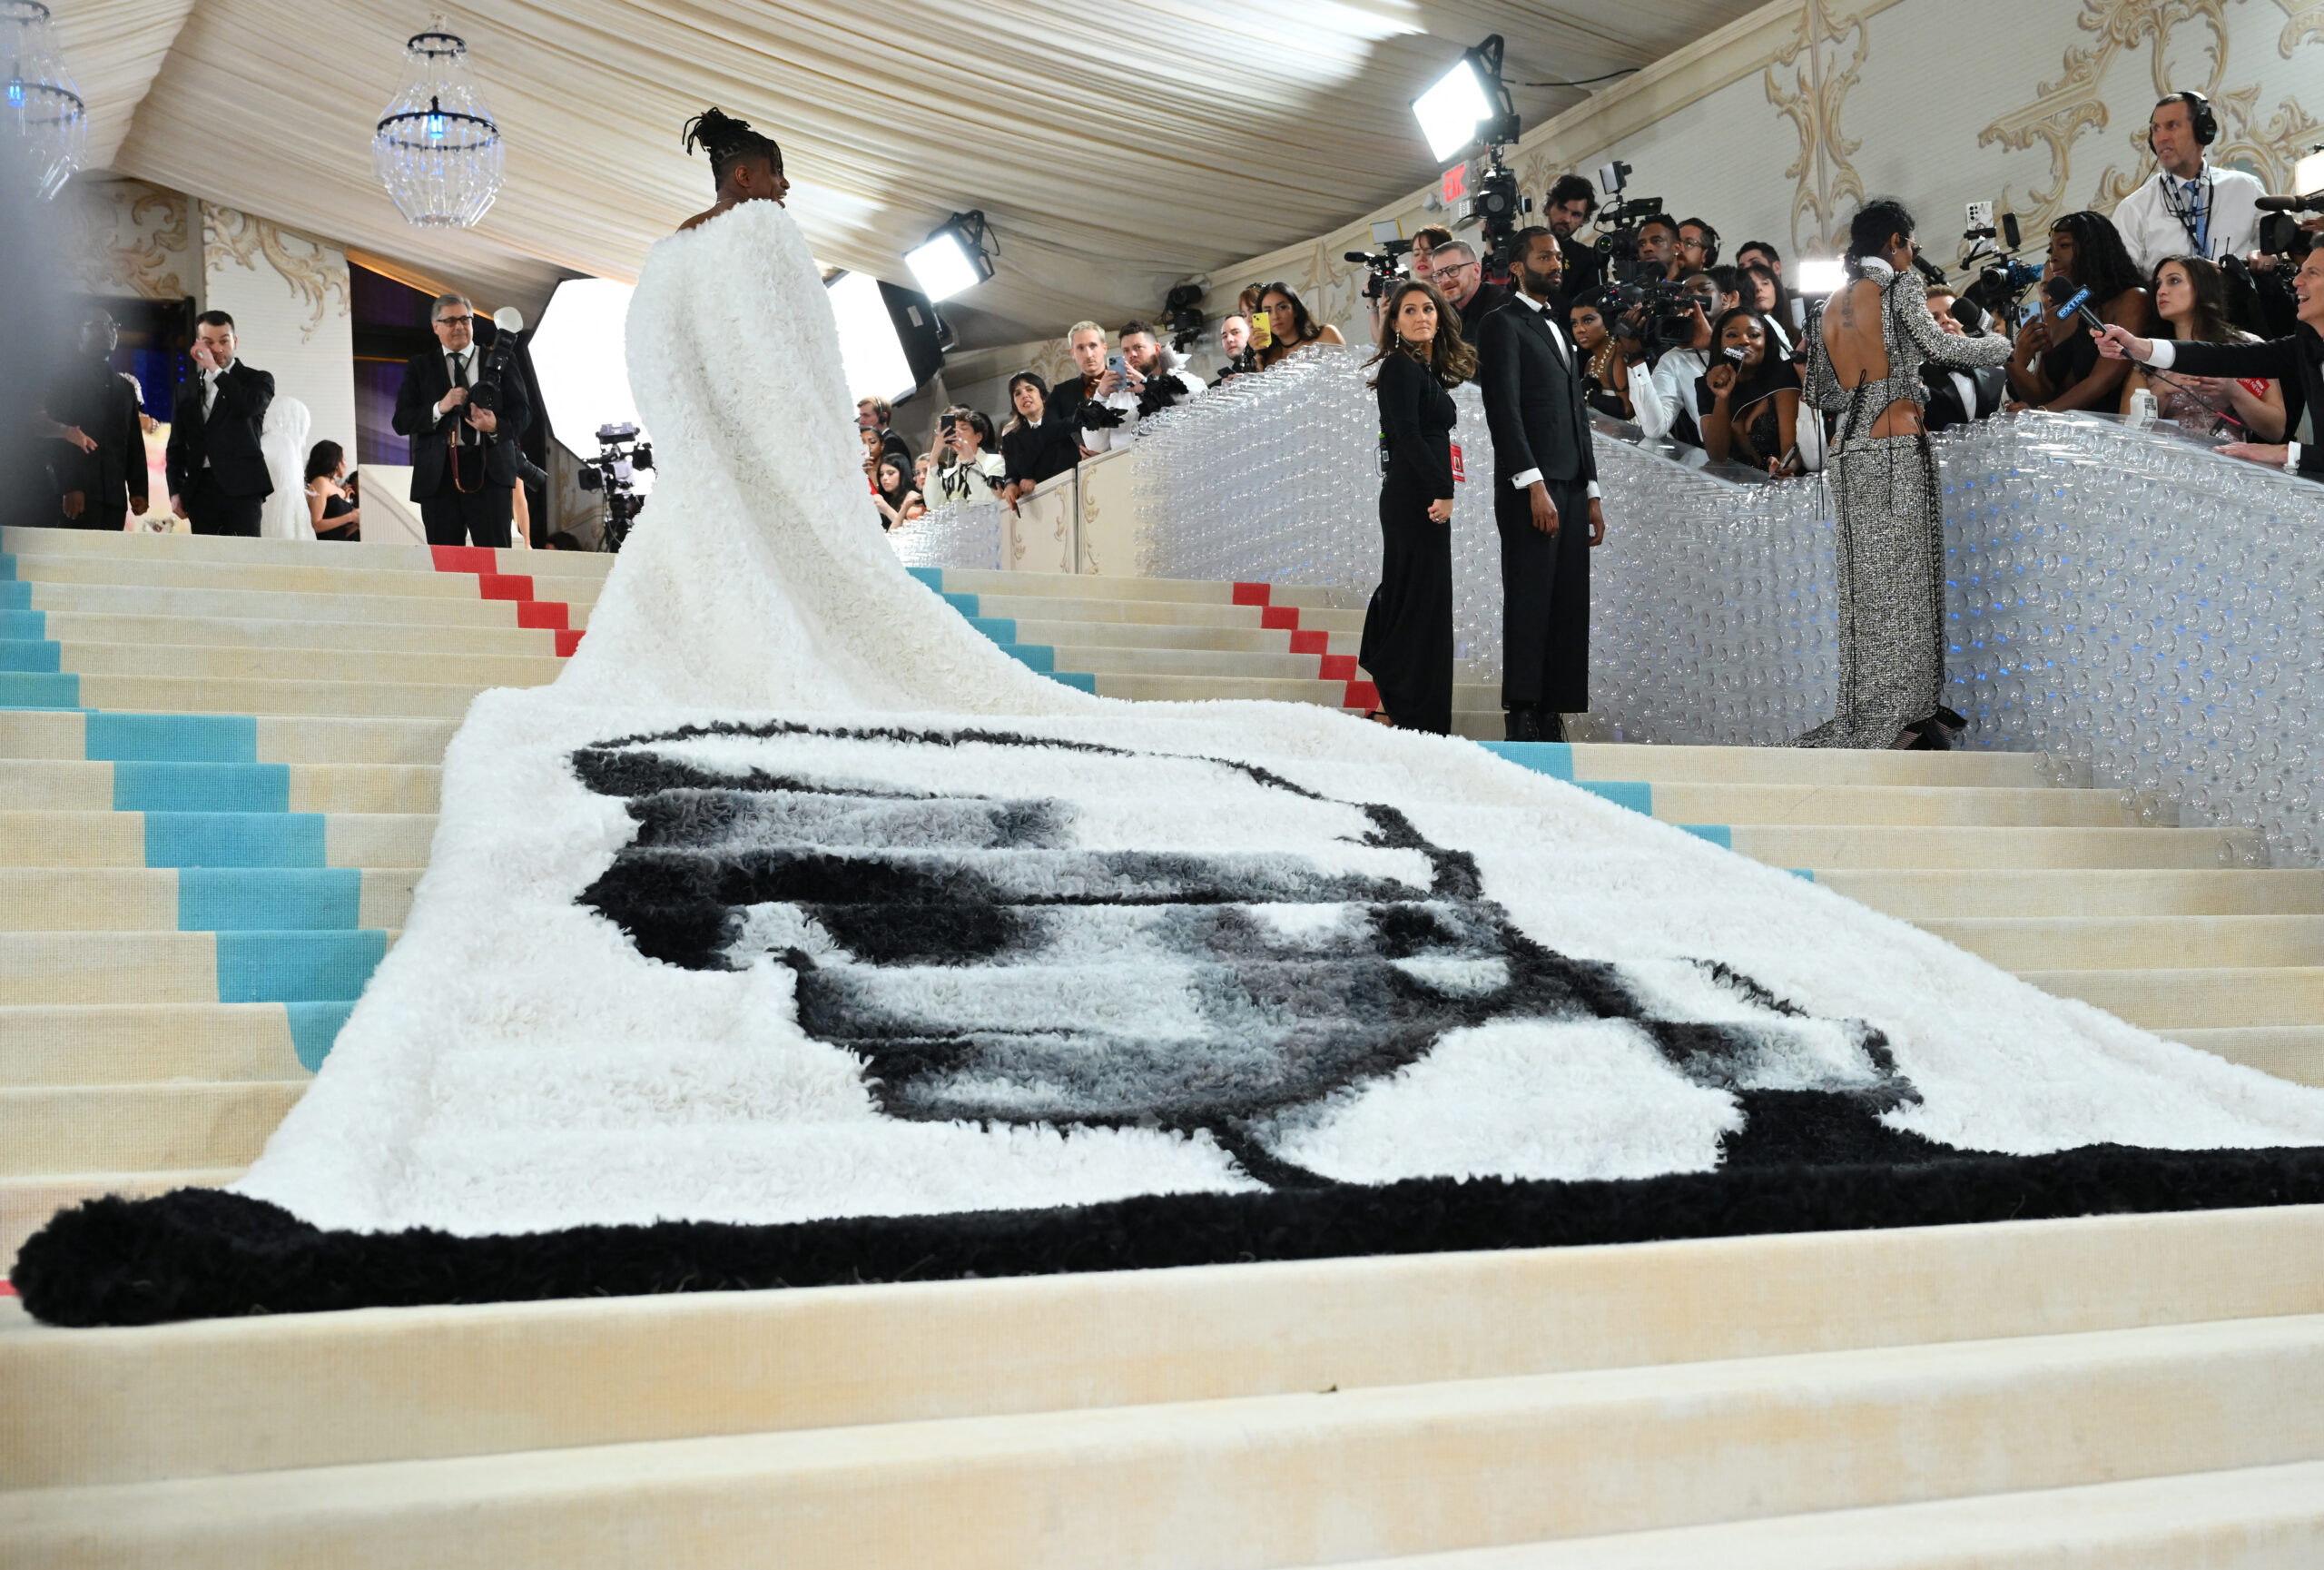 Showbiz, fashion elite honour designer Karl Lagerfeld at Met Gala